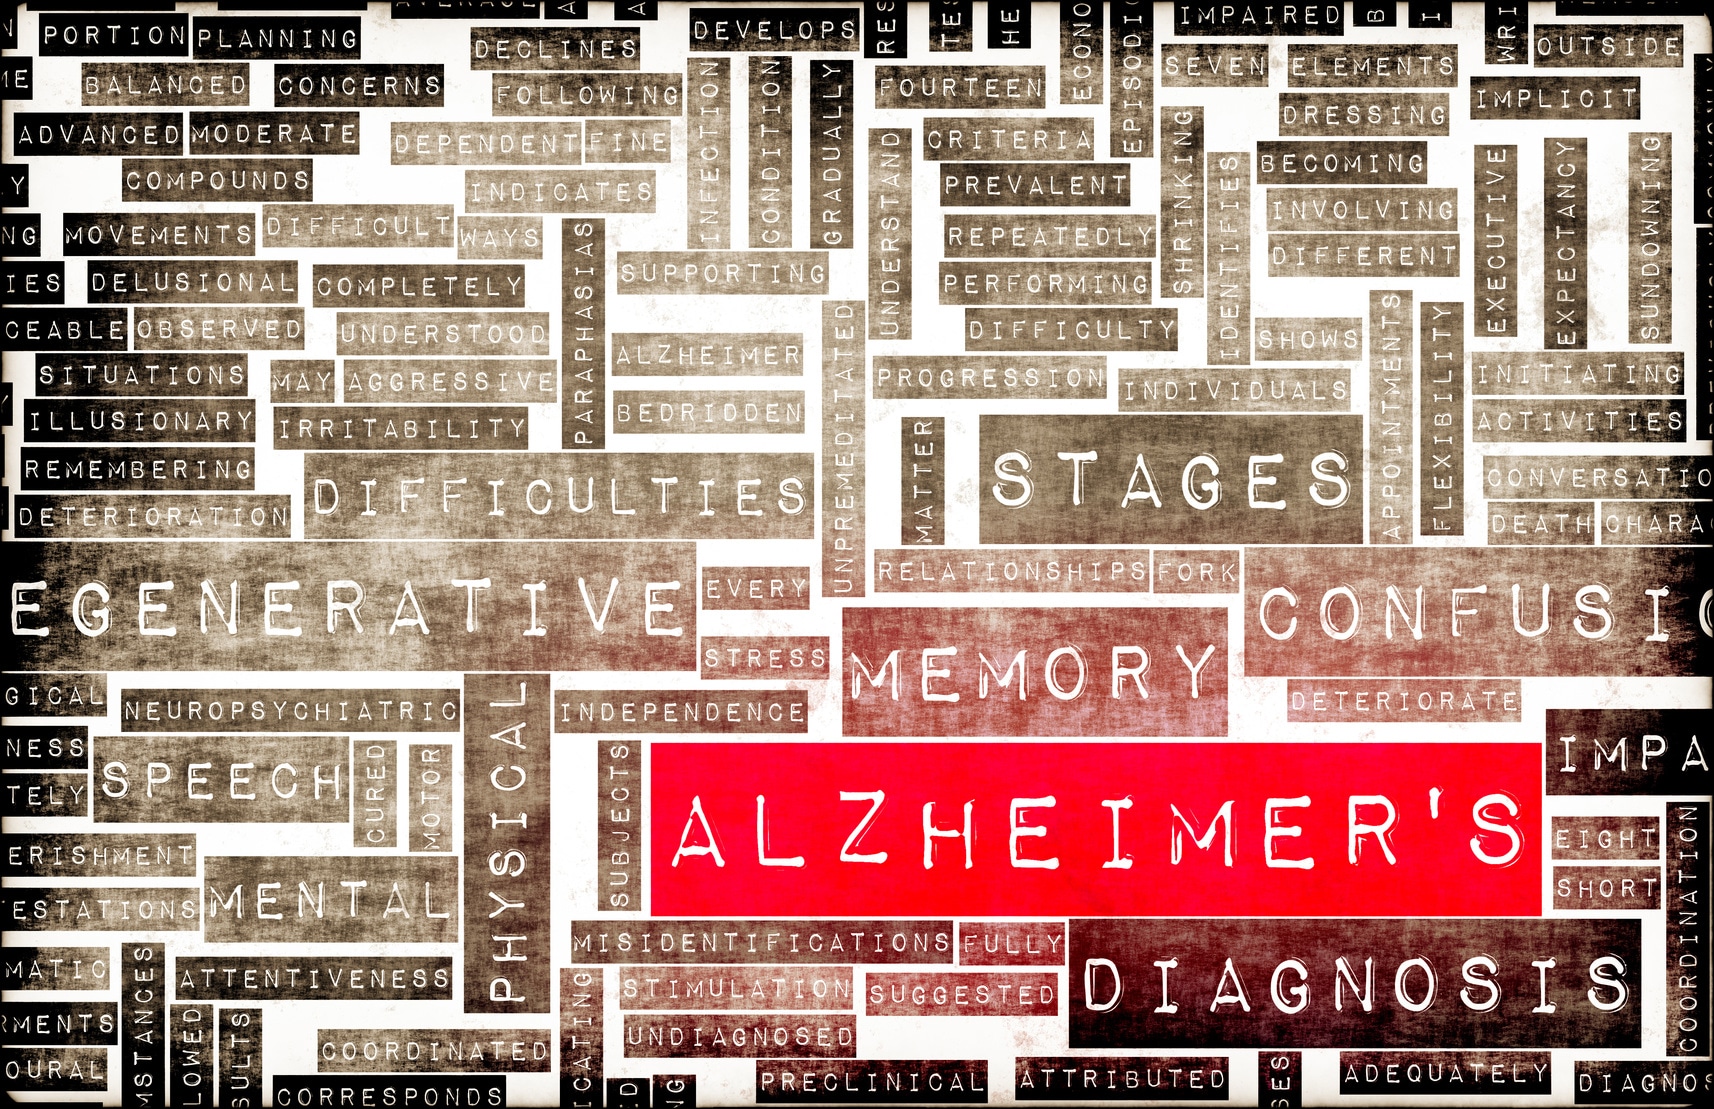 NIH Puts Focus on Alzheimer’s